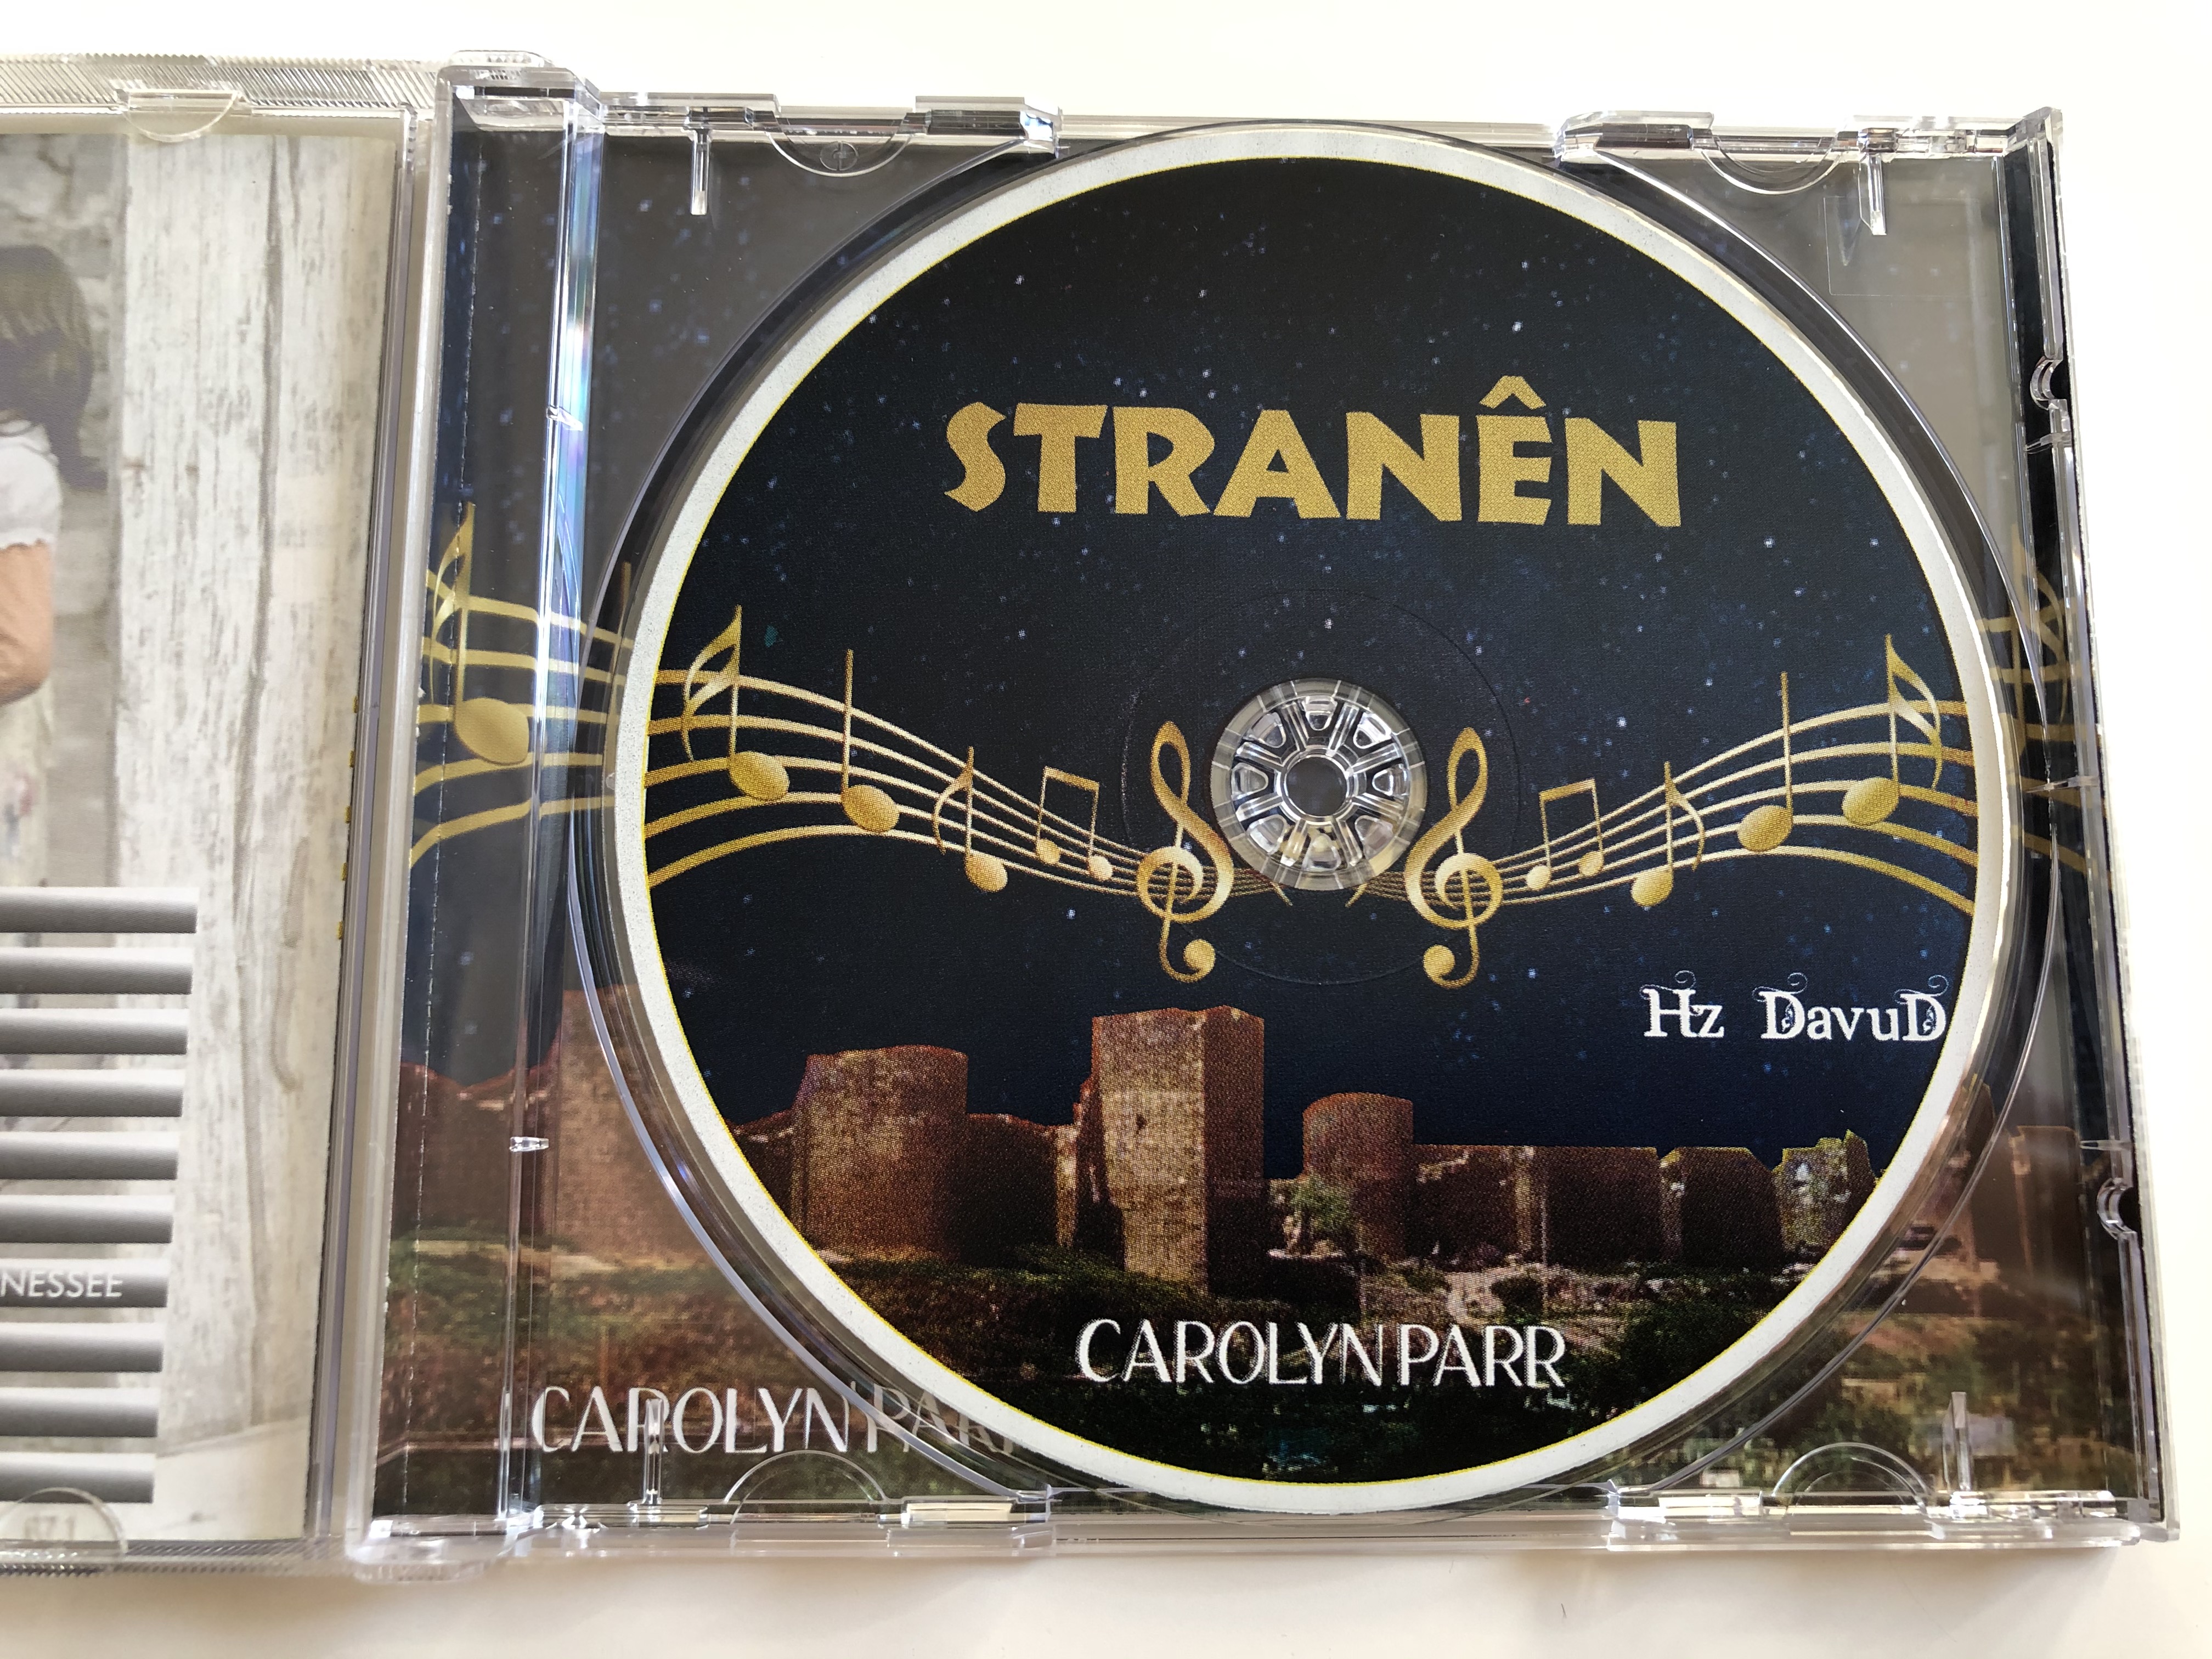 stran-n-hz-dawud-carolyn-parr-2014-audio-cd-2014-6-.jpg